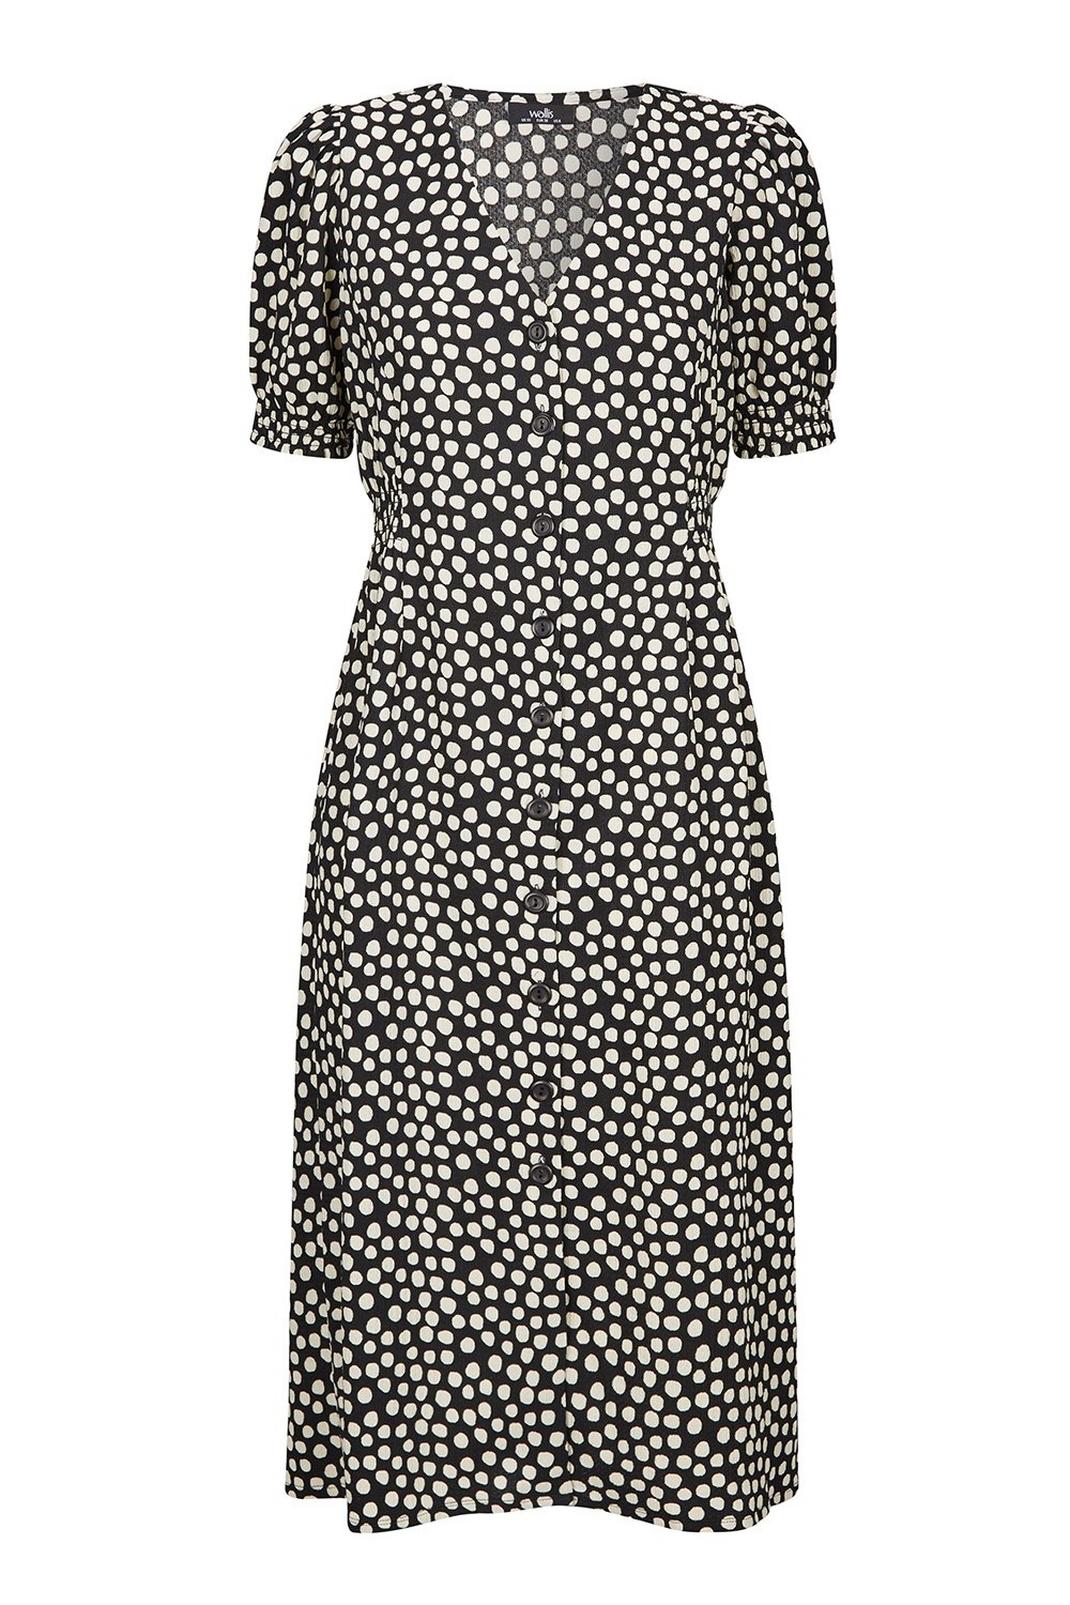 105 TALL Black Polka Dot Print Midi Dress image number 2